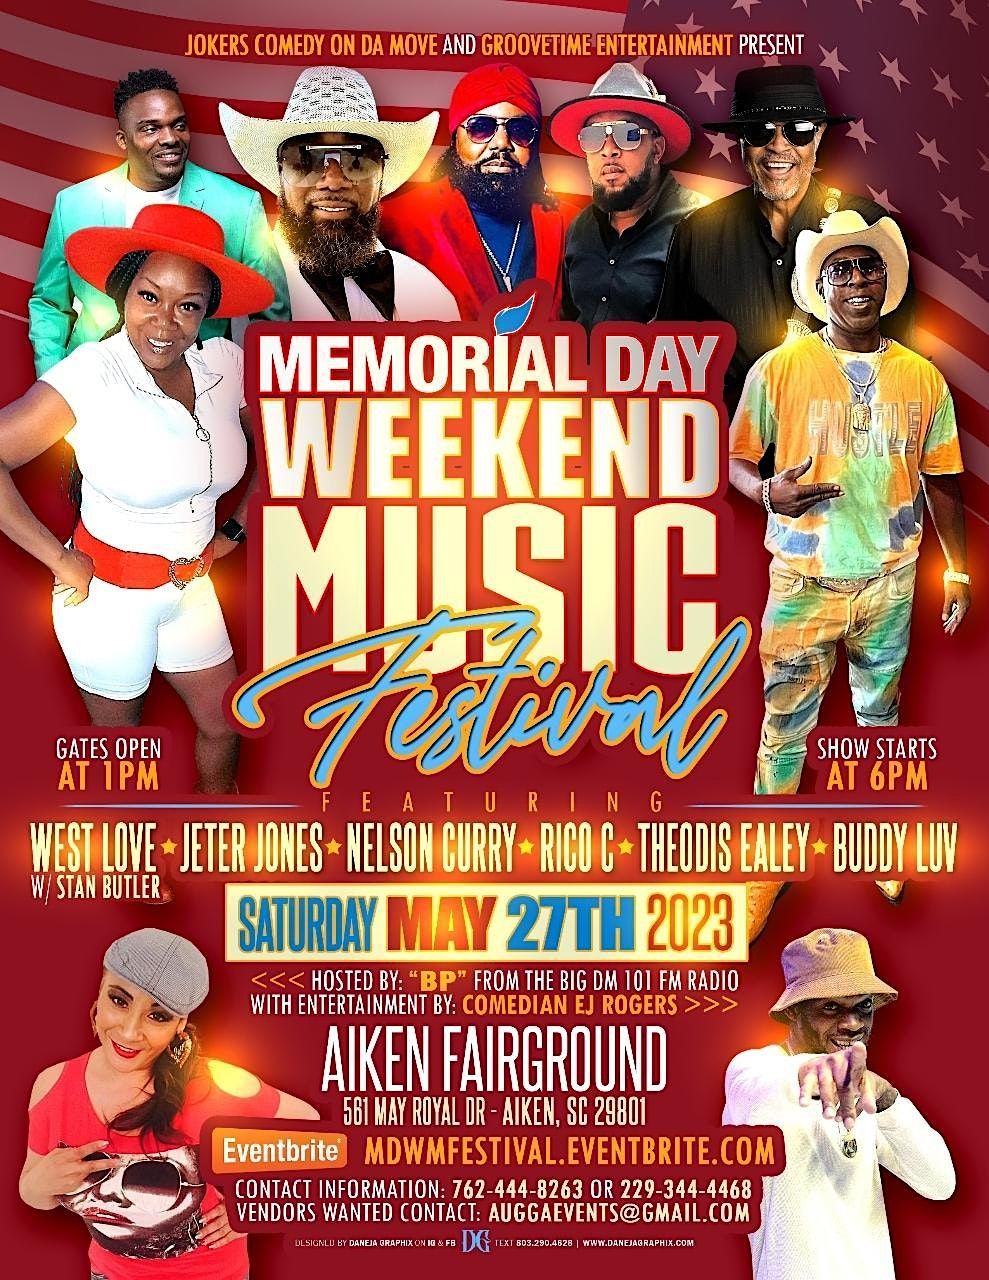 MEMORIAL DAY WEEKEND MUSIC FESTIVAL AKINS FAIRGROUNDS, Aiken, SC